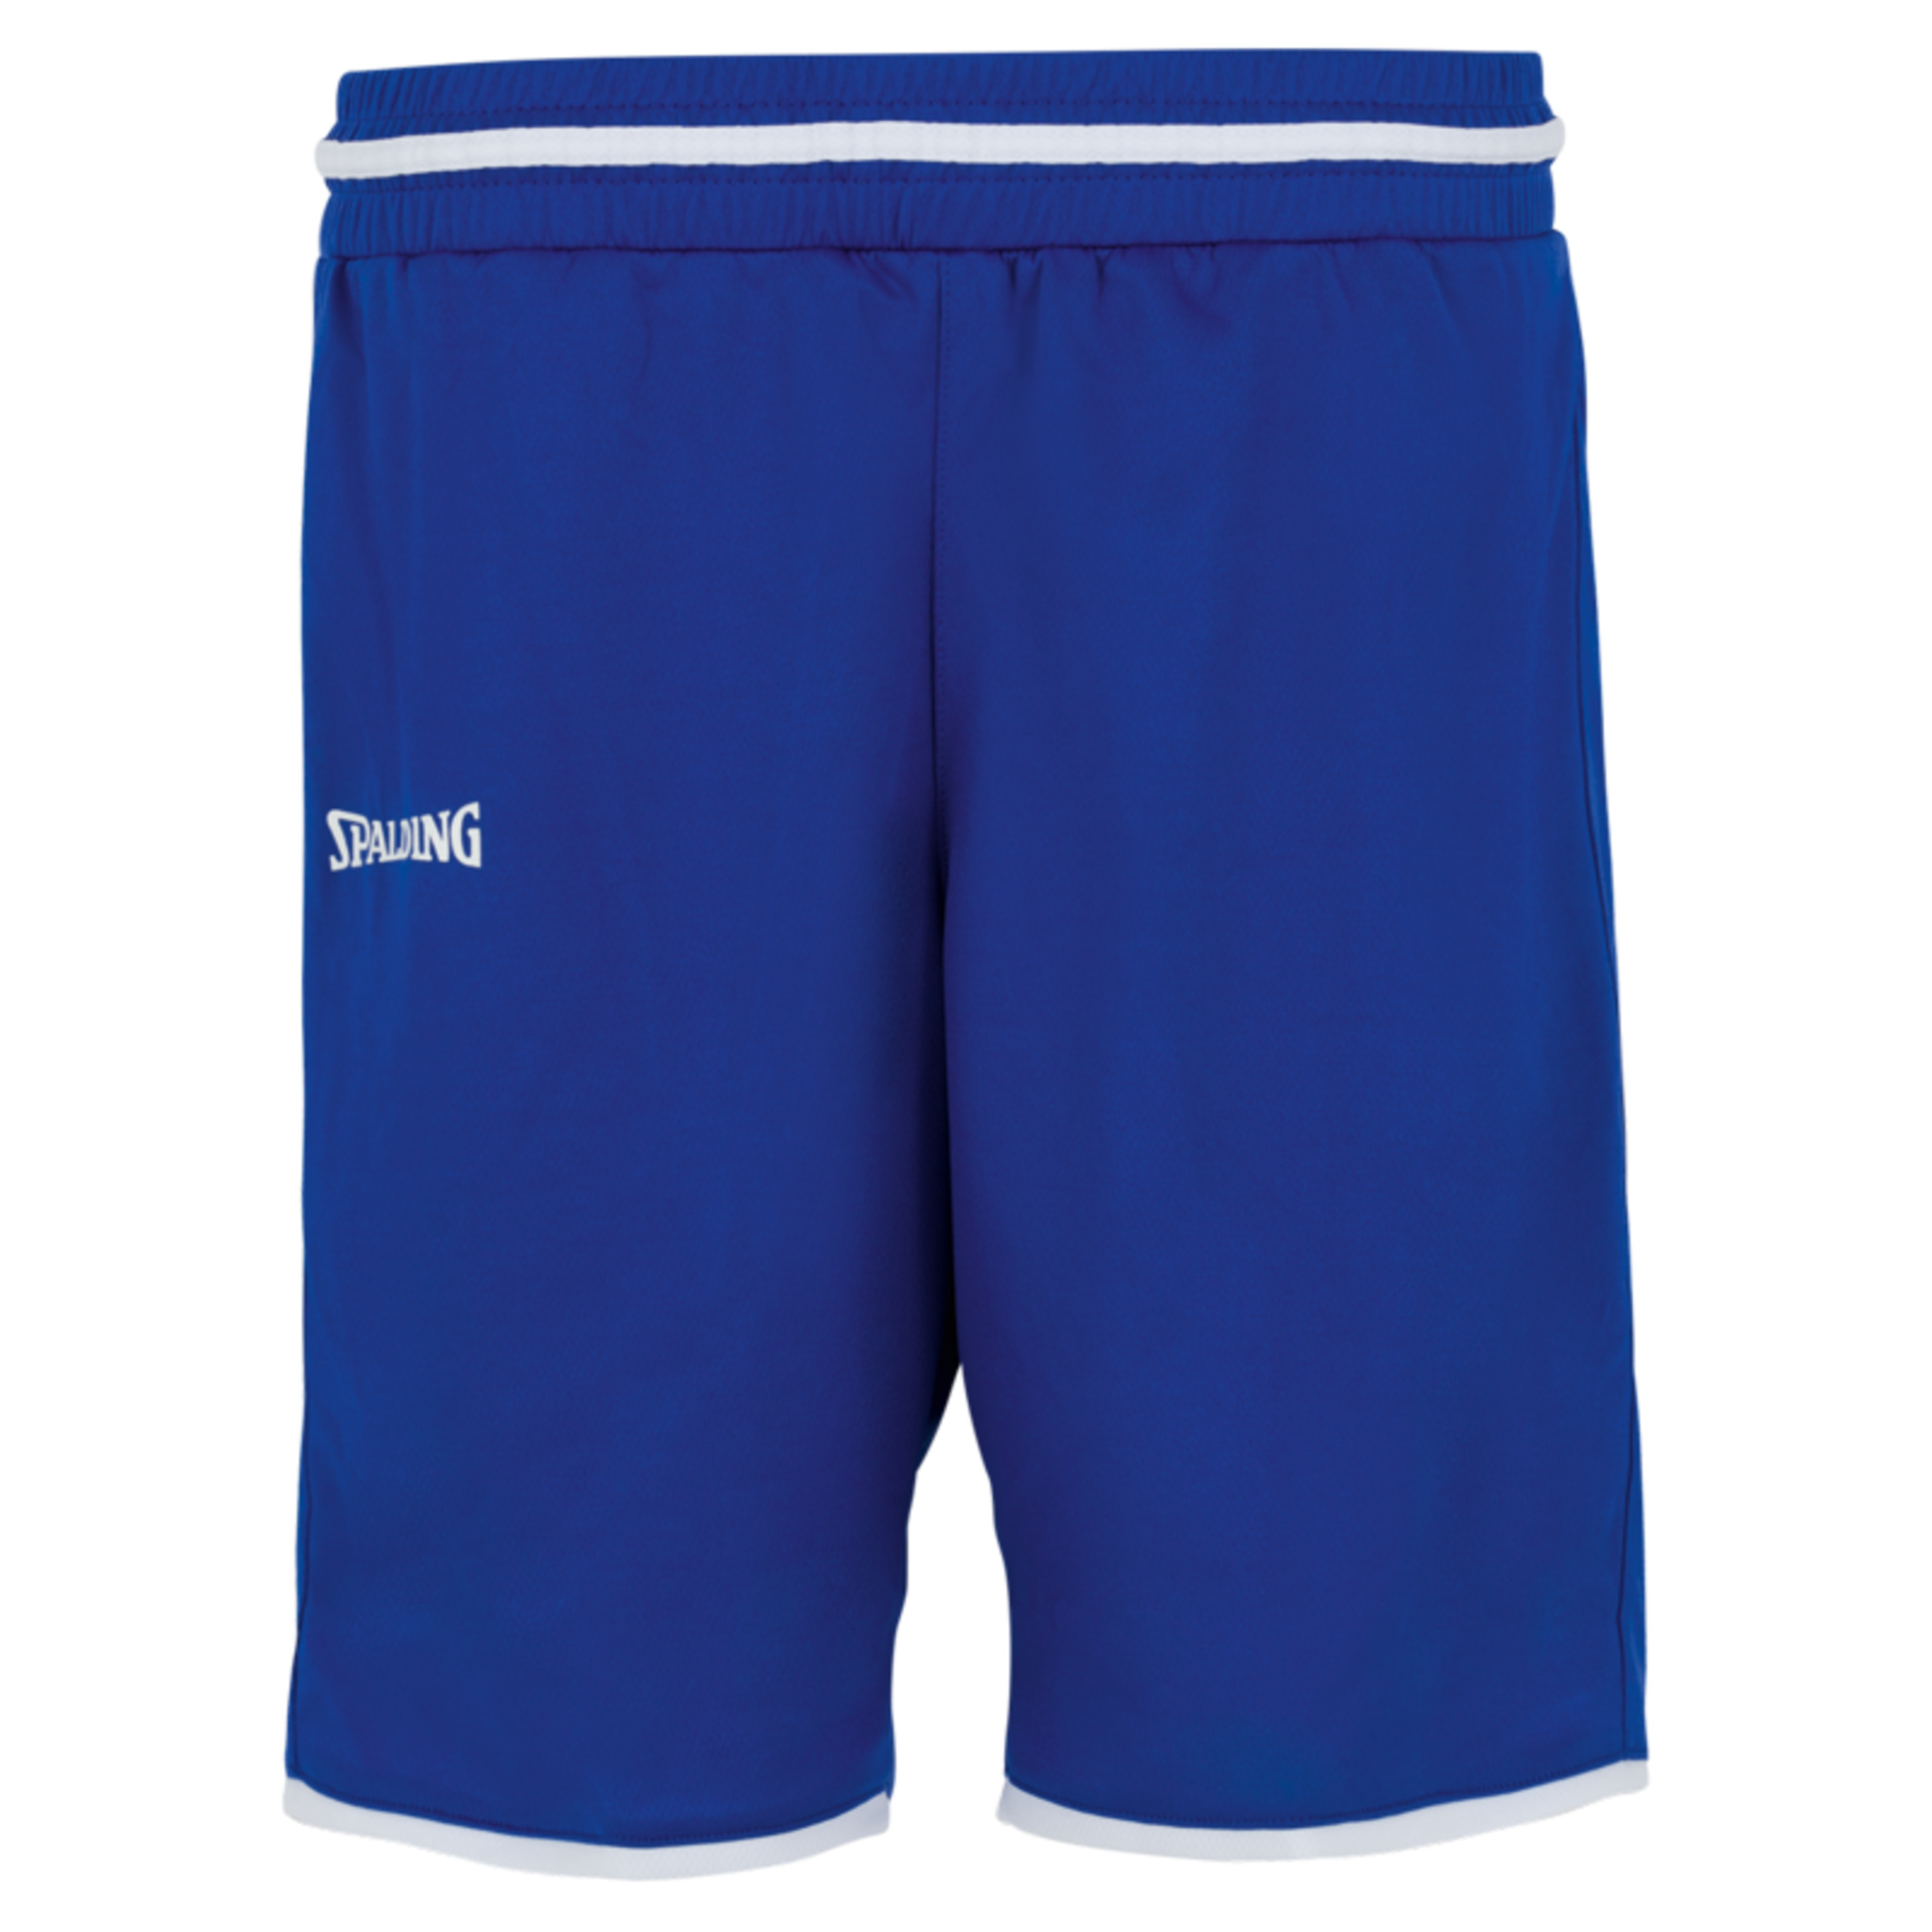 Move Shorts Women Azul Royal/blanco Spalding - azul - 